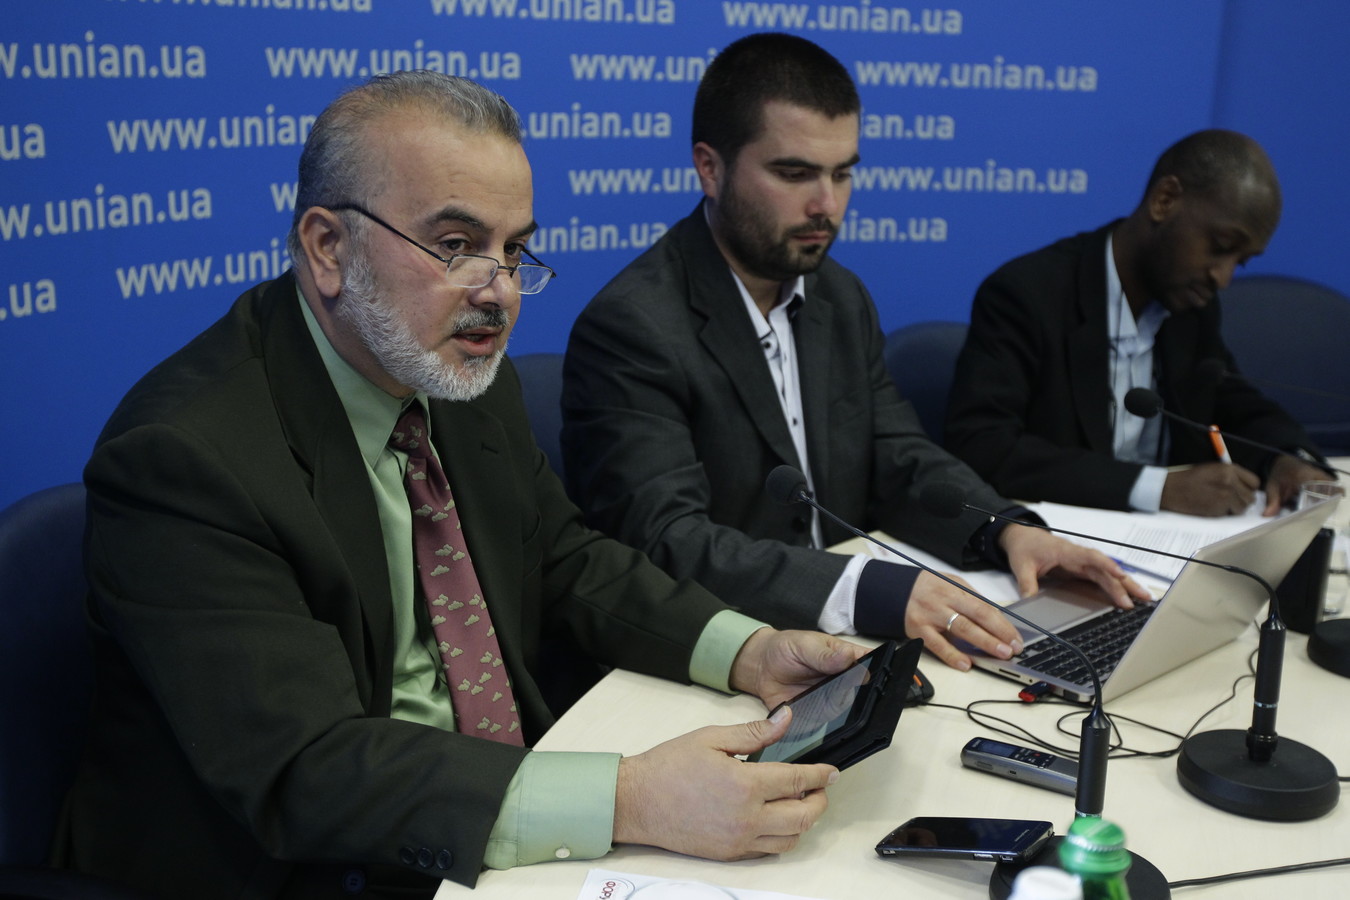 Во время двух часовой пресс-конференции представители Хизб ут-Тахрир ответили на вопросы журналистов о деятельности партии в Украине и за рубежом. 